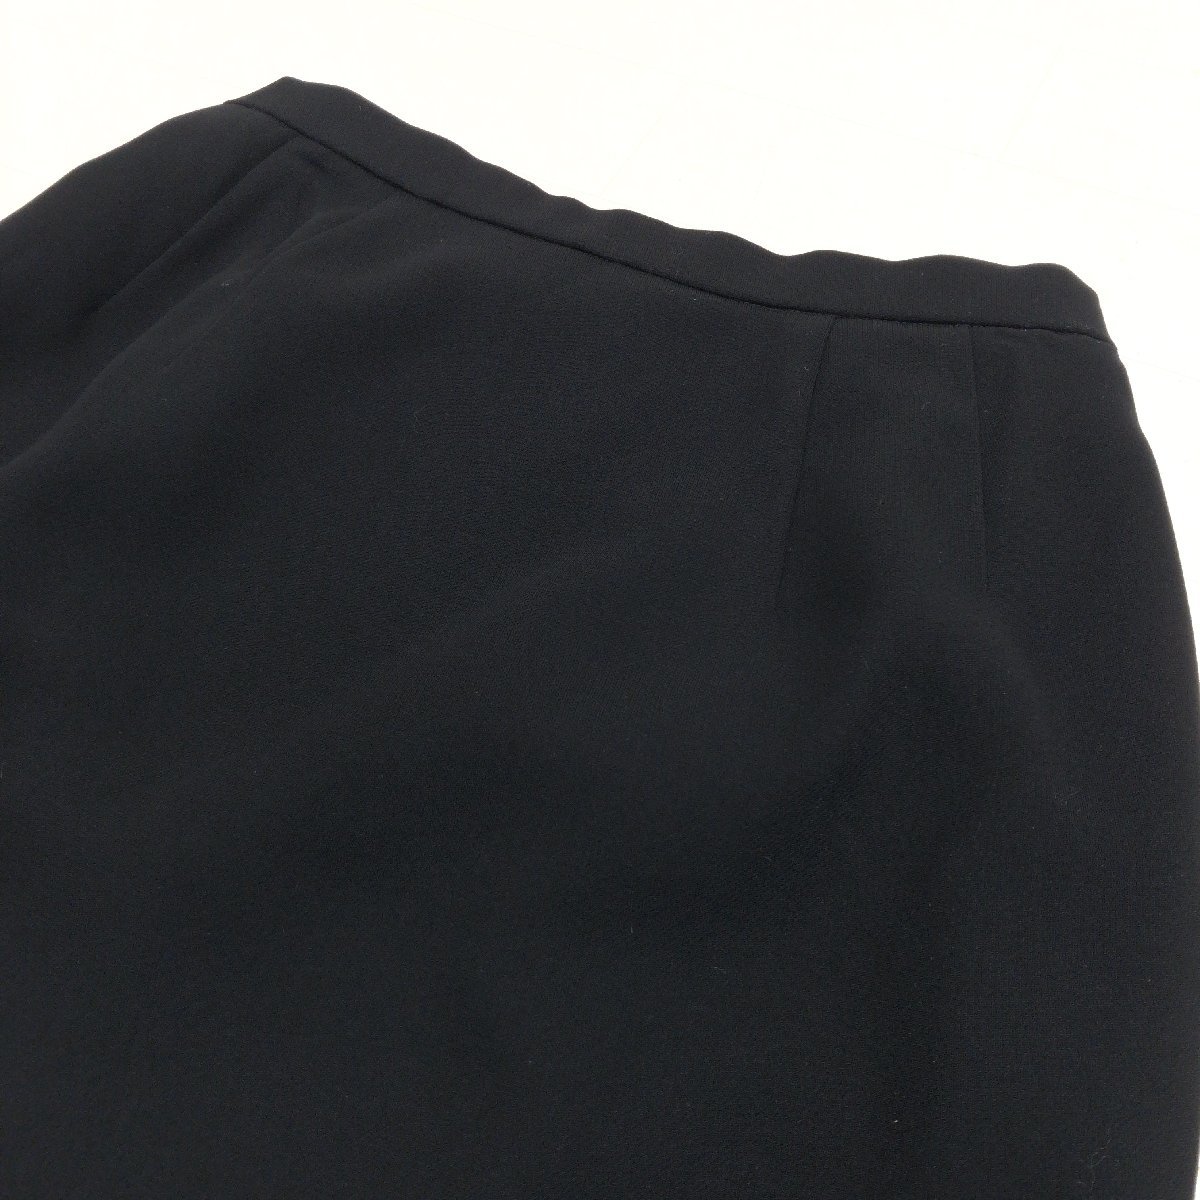 ●美品 SOIR BENIR ソワールベニール 東京ソワール スカート スーツ 上下セットアップ 9ABR(M相当) 黒 喪服 礼服 ブラックフォーマル_画像7